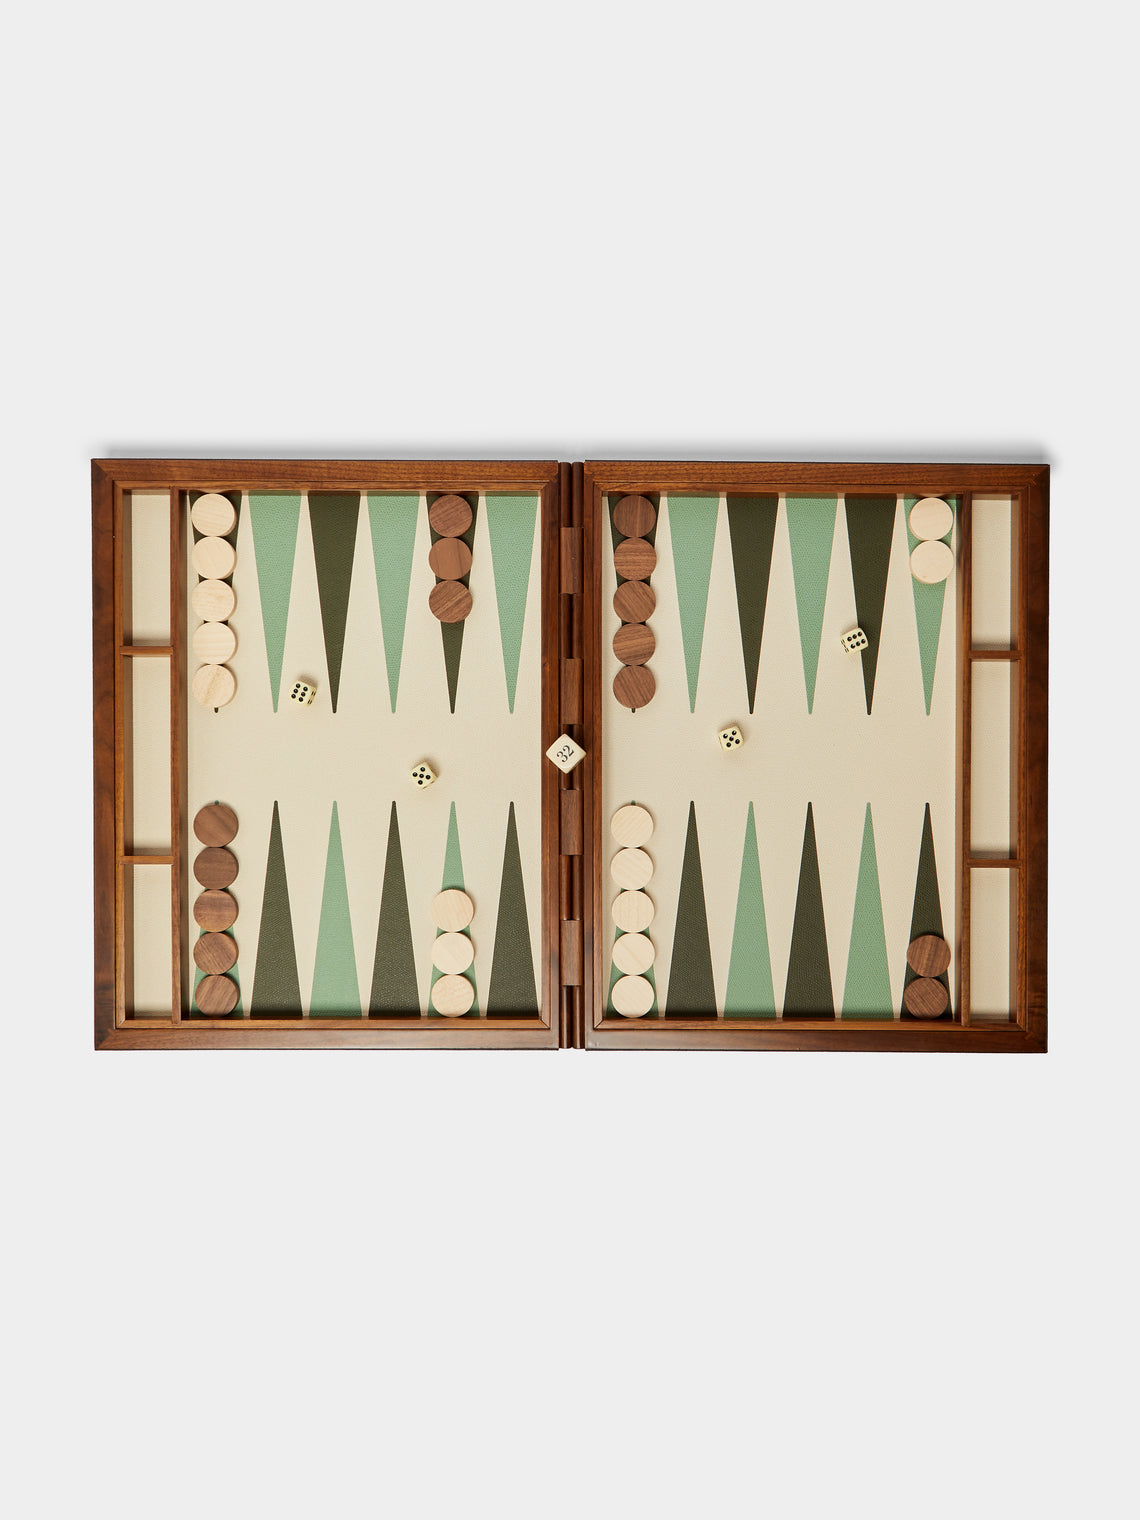 Giobagnara - Leather Backgammon Set -  - ABASK - 